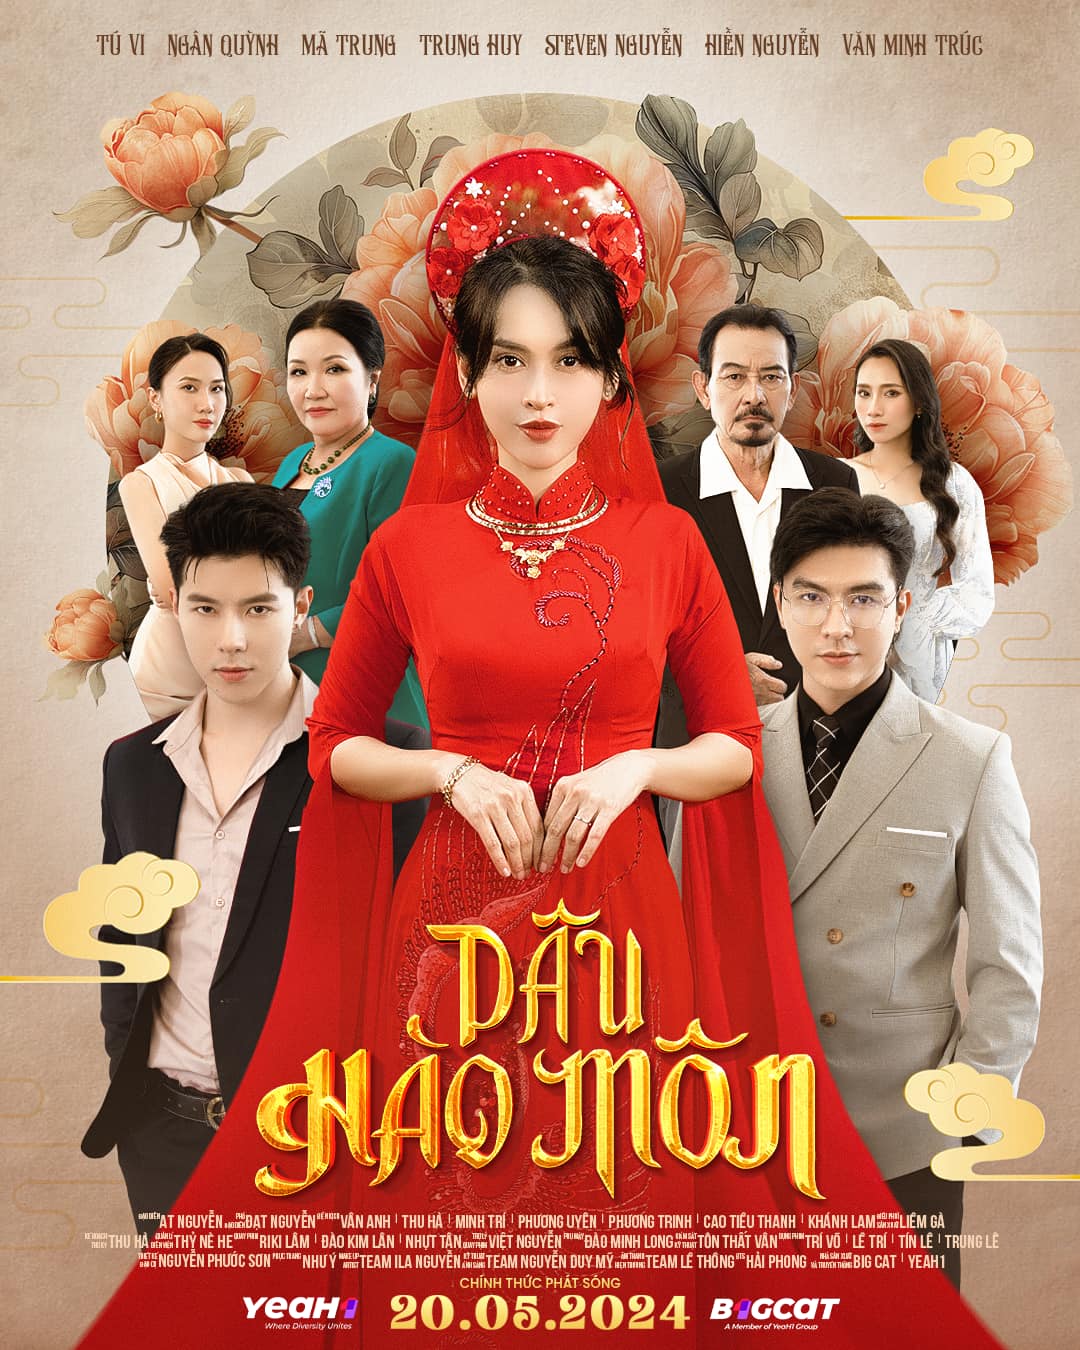 Bộ phim 'Dâu hào môn' với sự tham gia của Tú Vi, Trung Huy, Steven Nguyễn, Hiền Nguyễn... nhận được sự quan tâm của khán giả